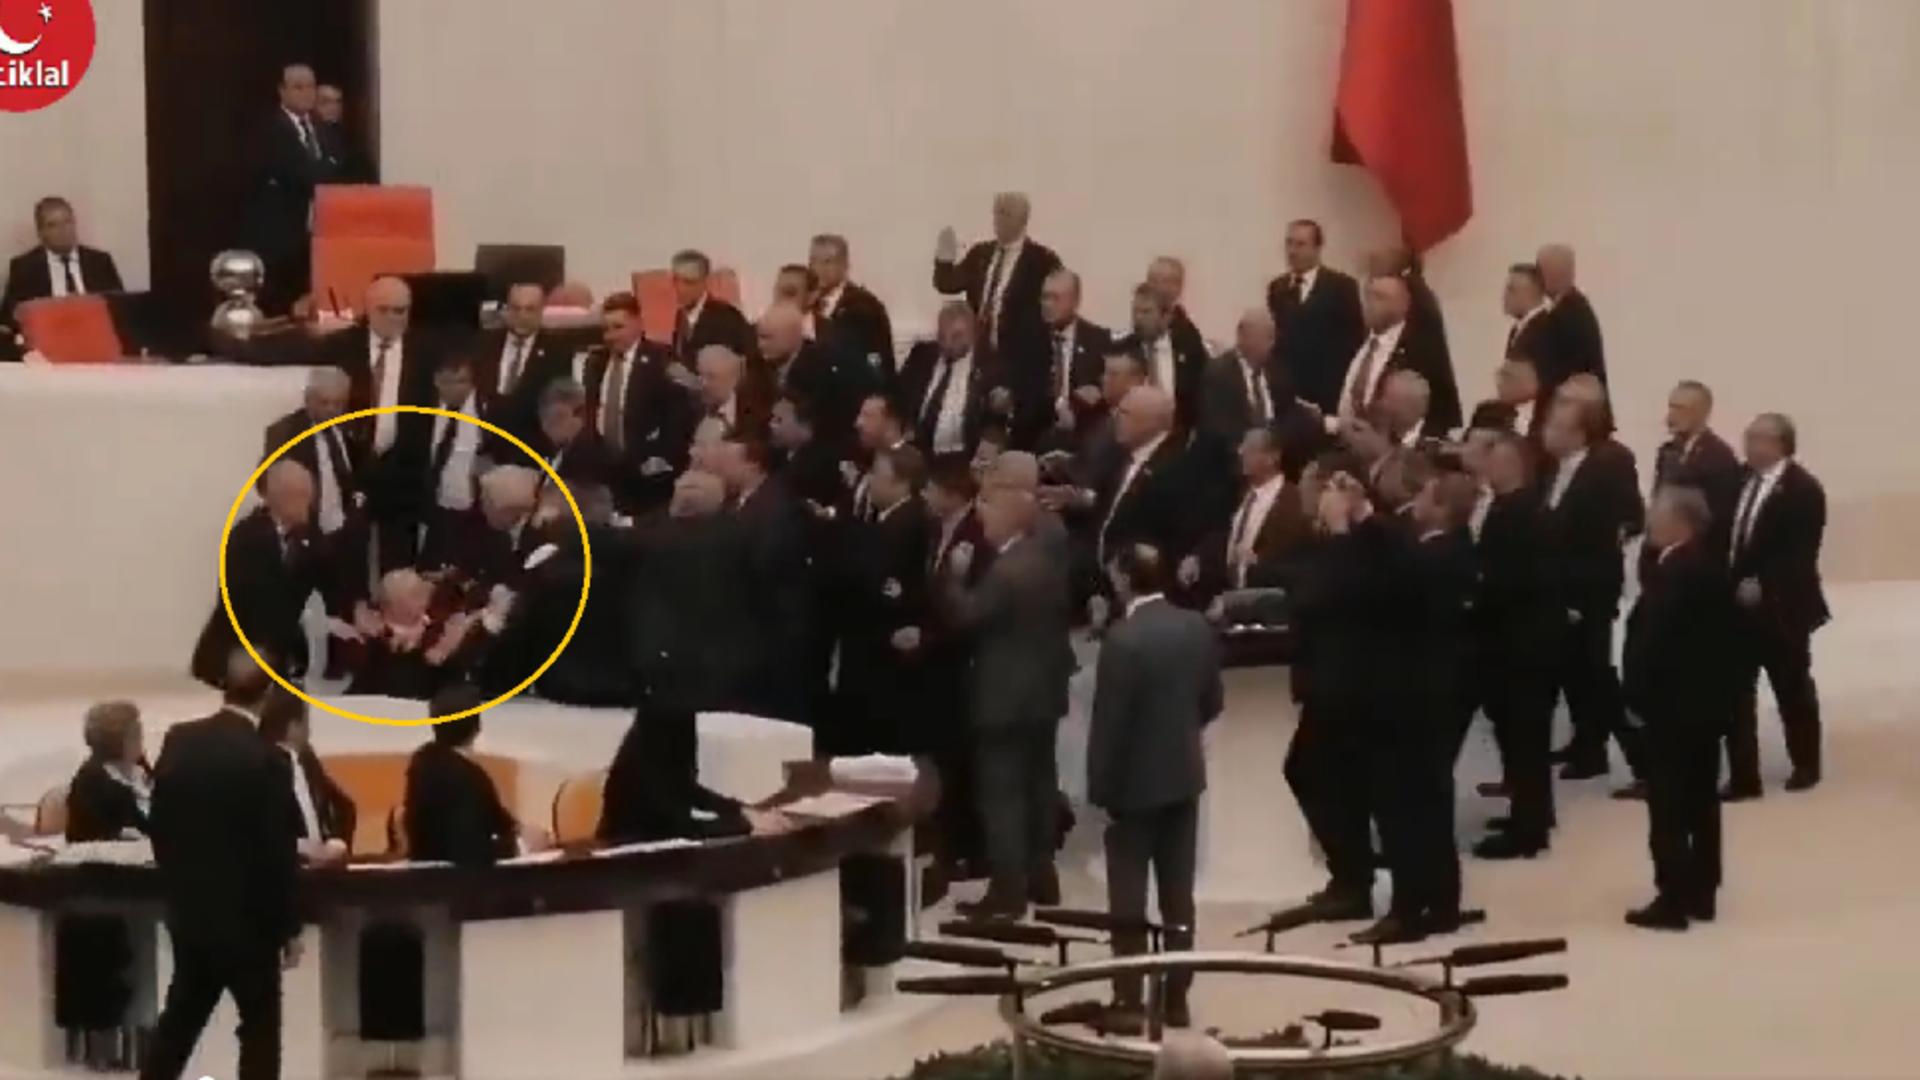 Bătaie in Parlamentul turc (captură video)